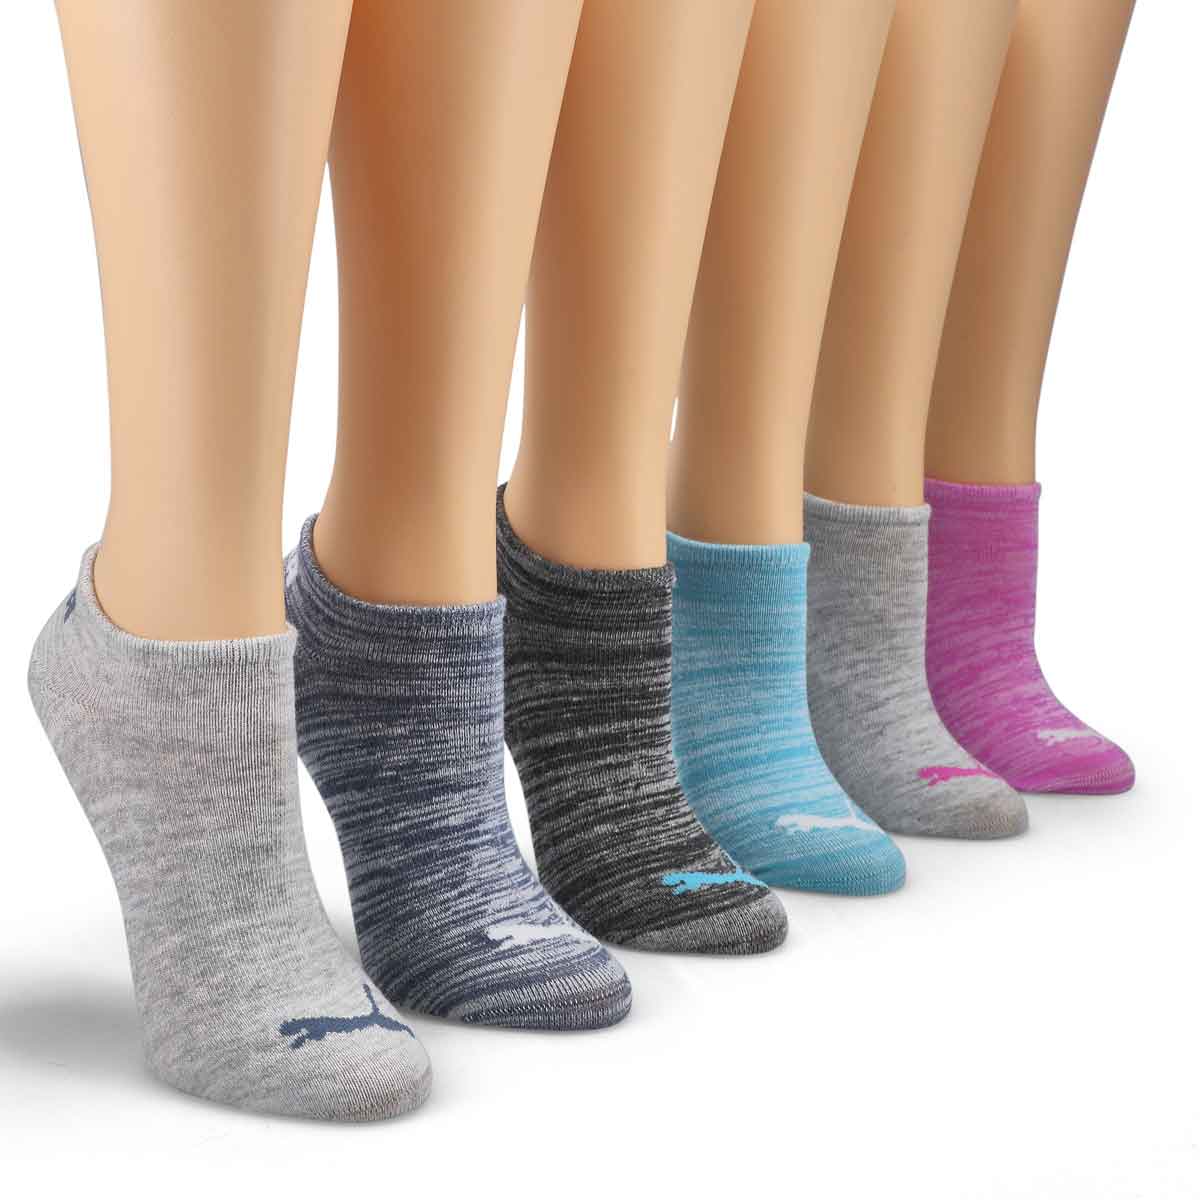 Socquettes invisibles NO SHOW, femmes - 6 paires